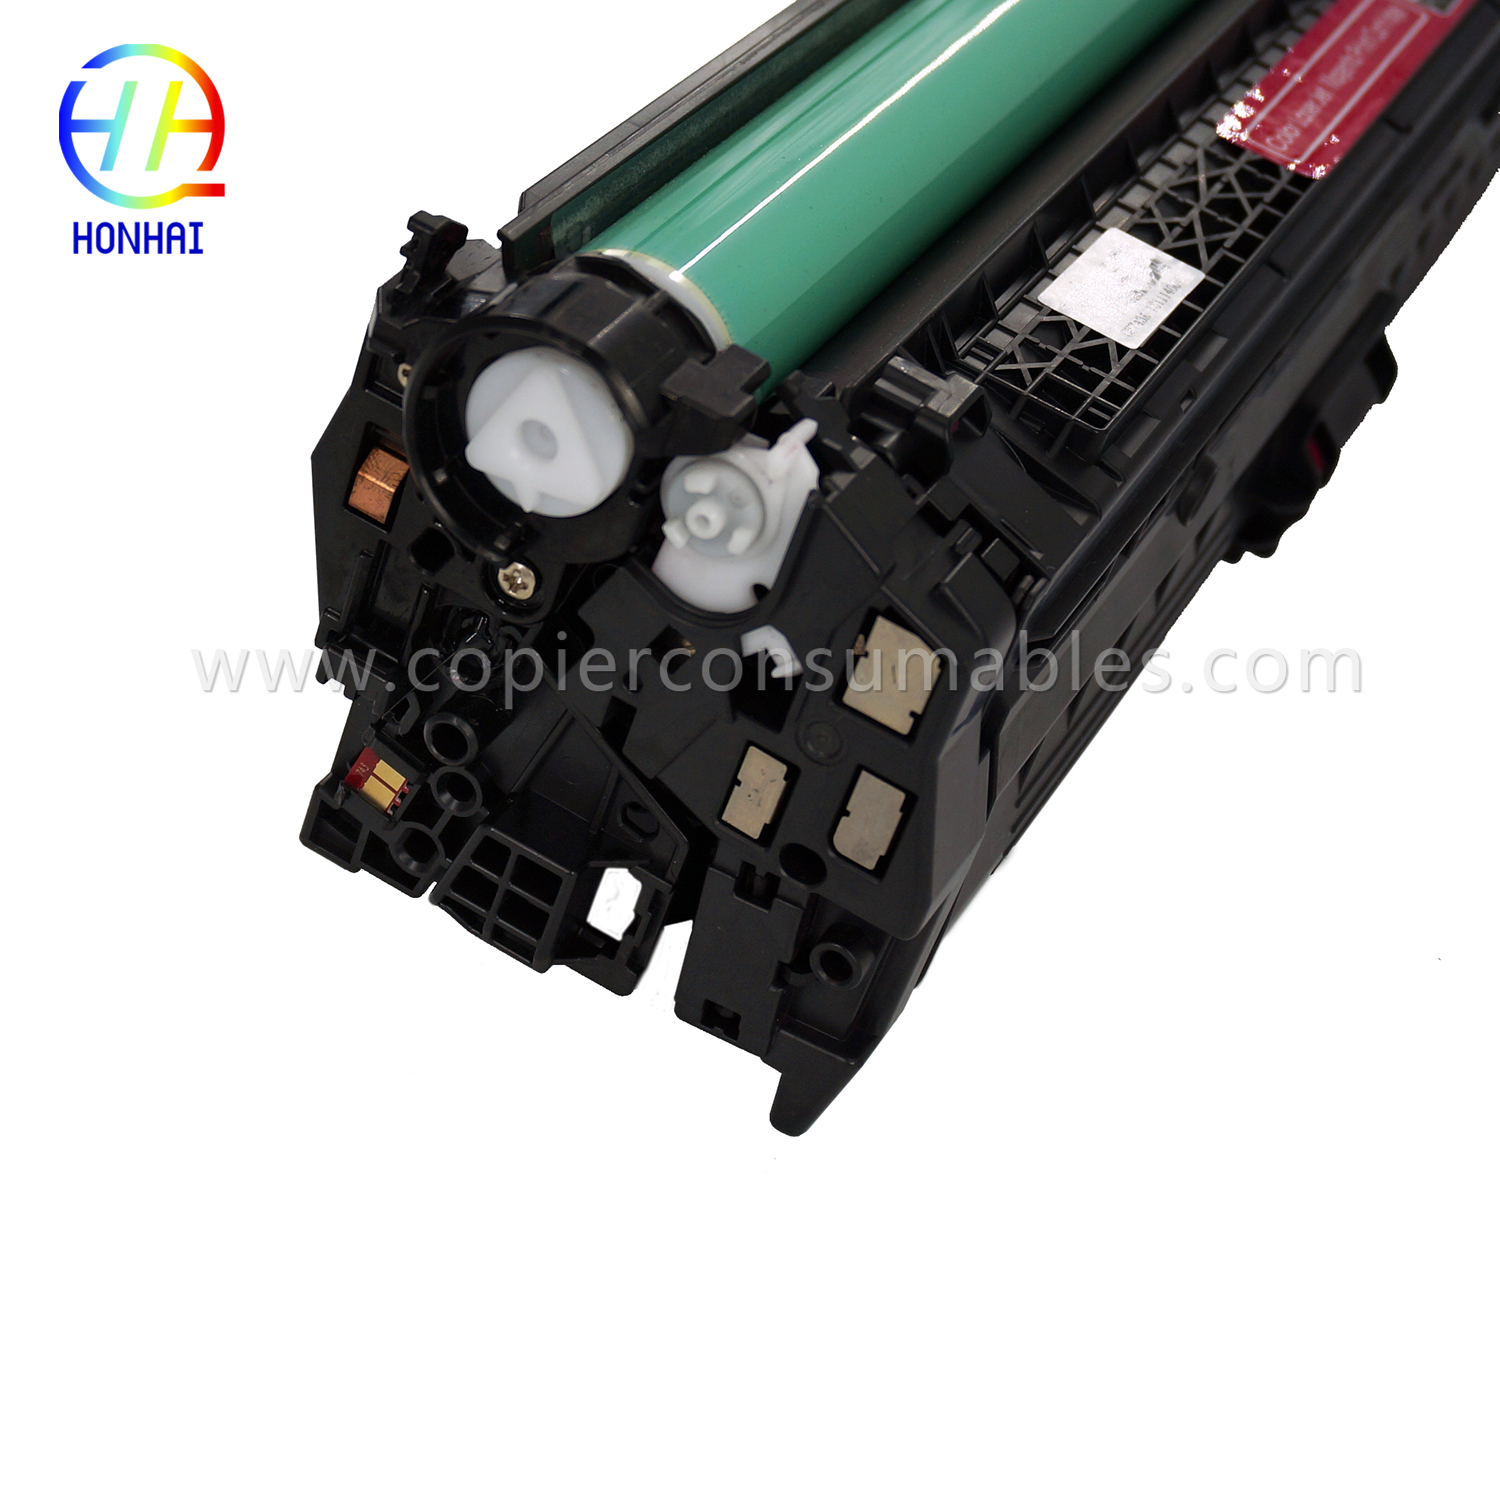 HP Color LaserJet Pro CP5025 CP5220 CP5225 (CE743A 307A) хорны хор (13) 拷贝